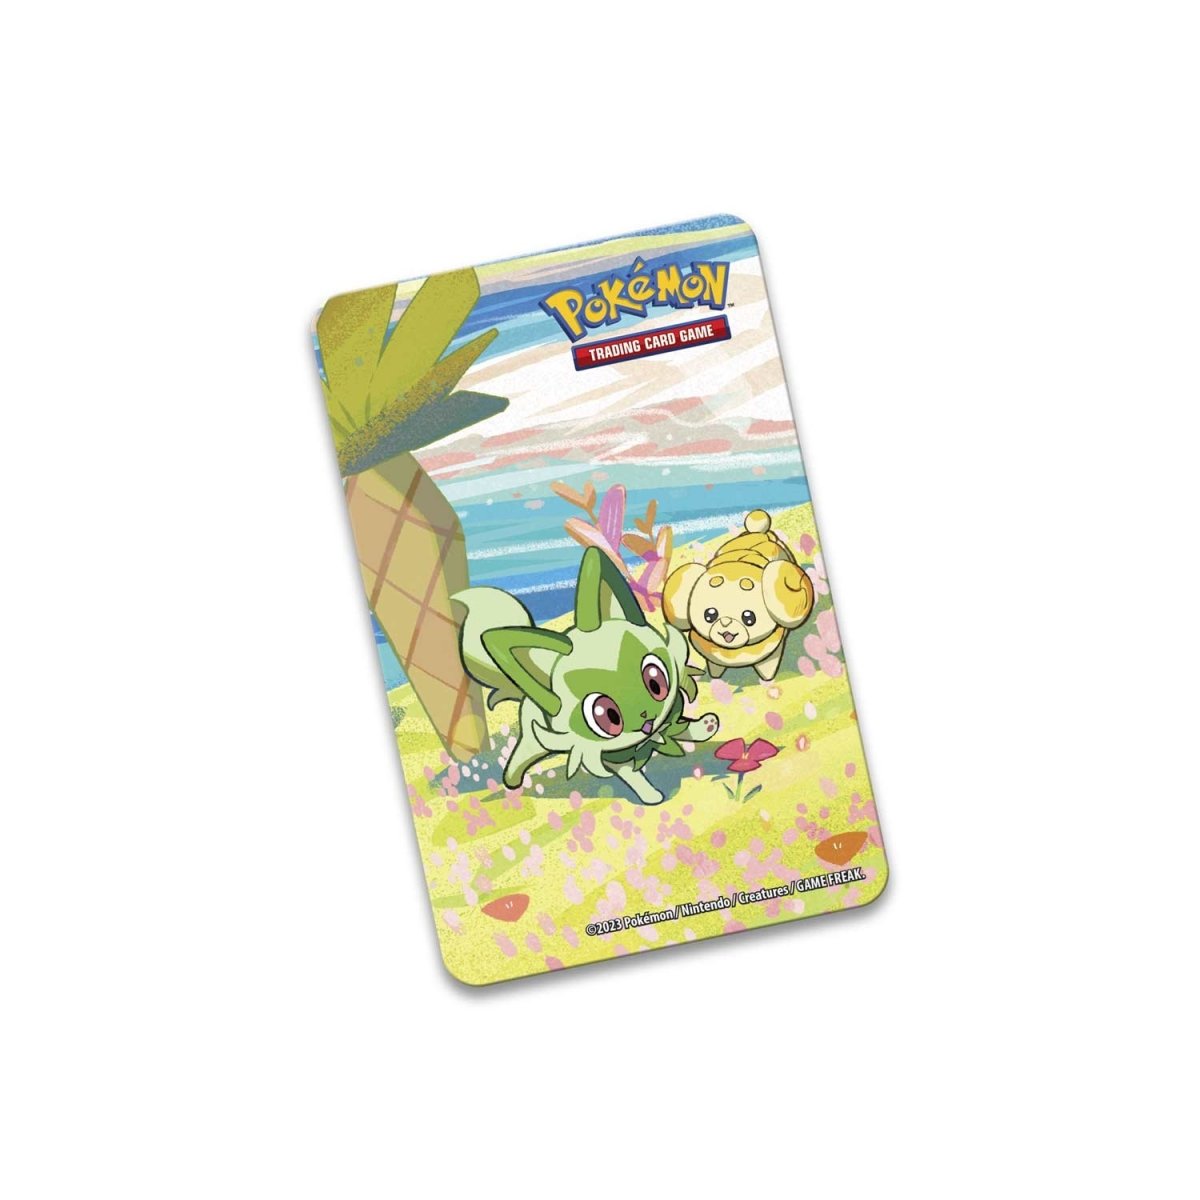 Pokemon TCG: Scarlet &amp; Violet SV01 Paldea Friends Mini Tin-Set of 5-The Pokémon Company International-Ace Cards &amp; Collectibles